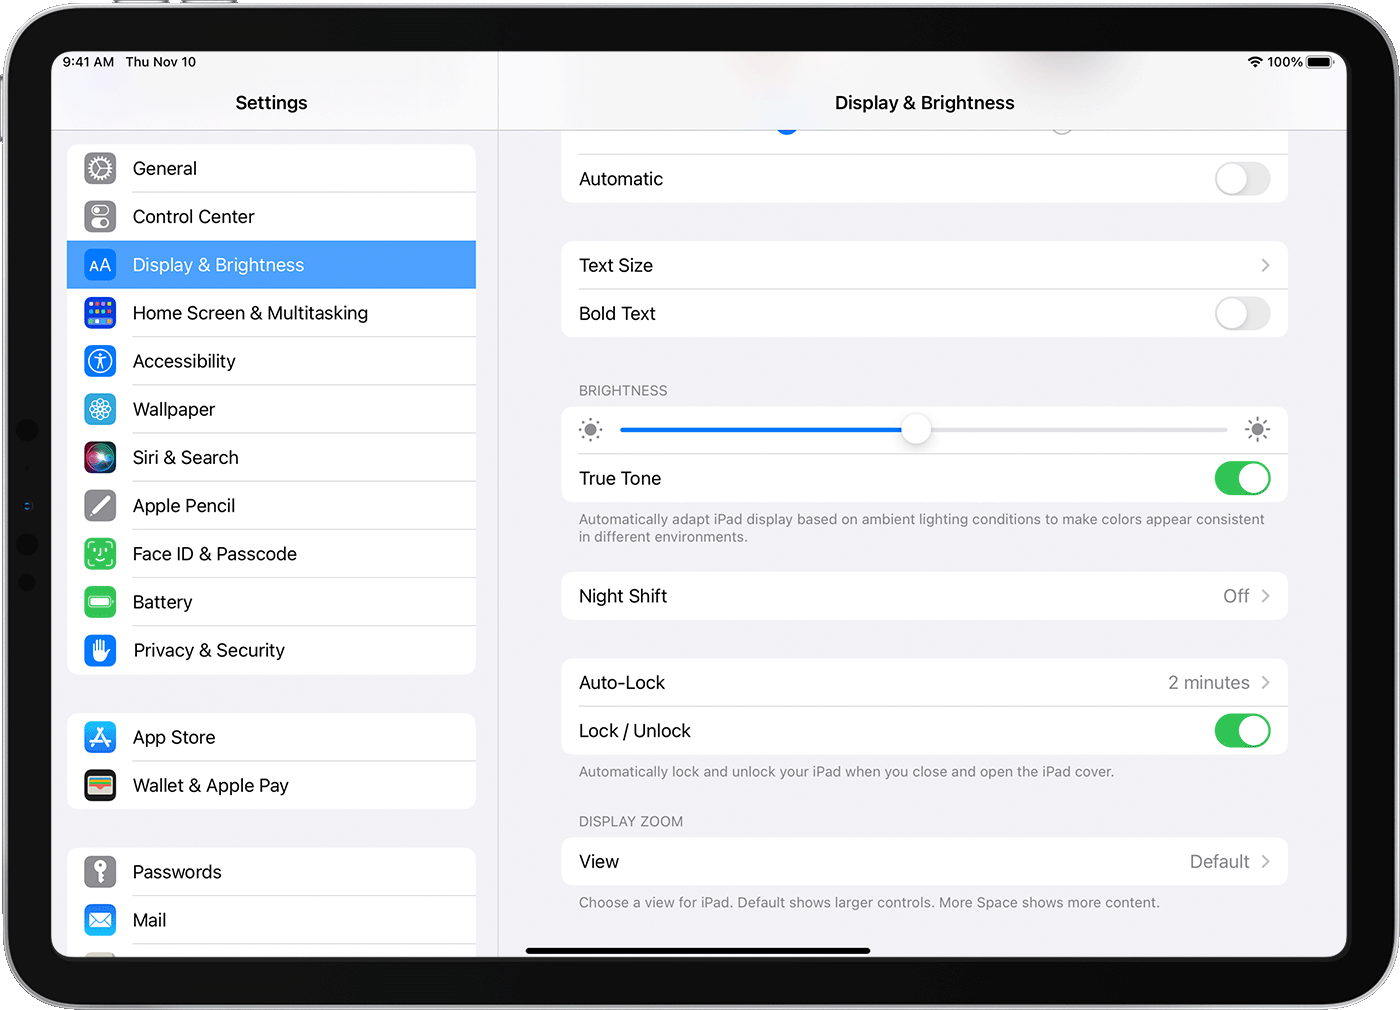 iPad Settings screen with the Lock/Unlock setting displayed